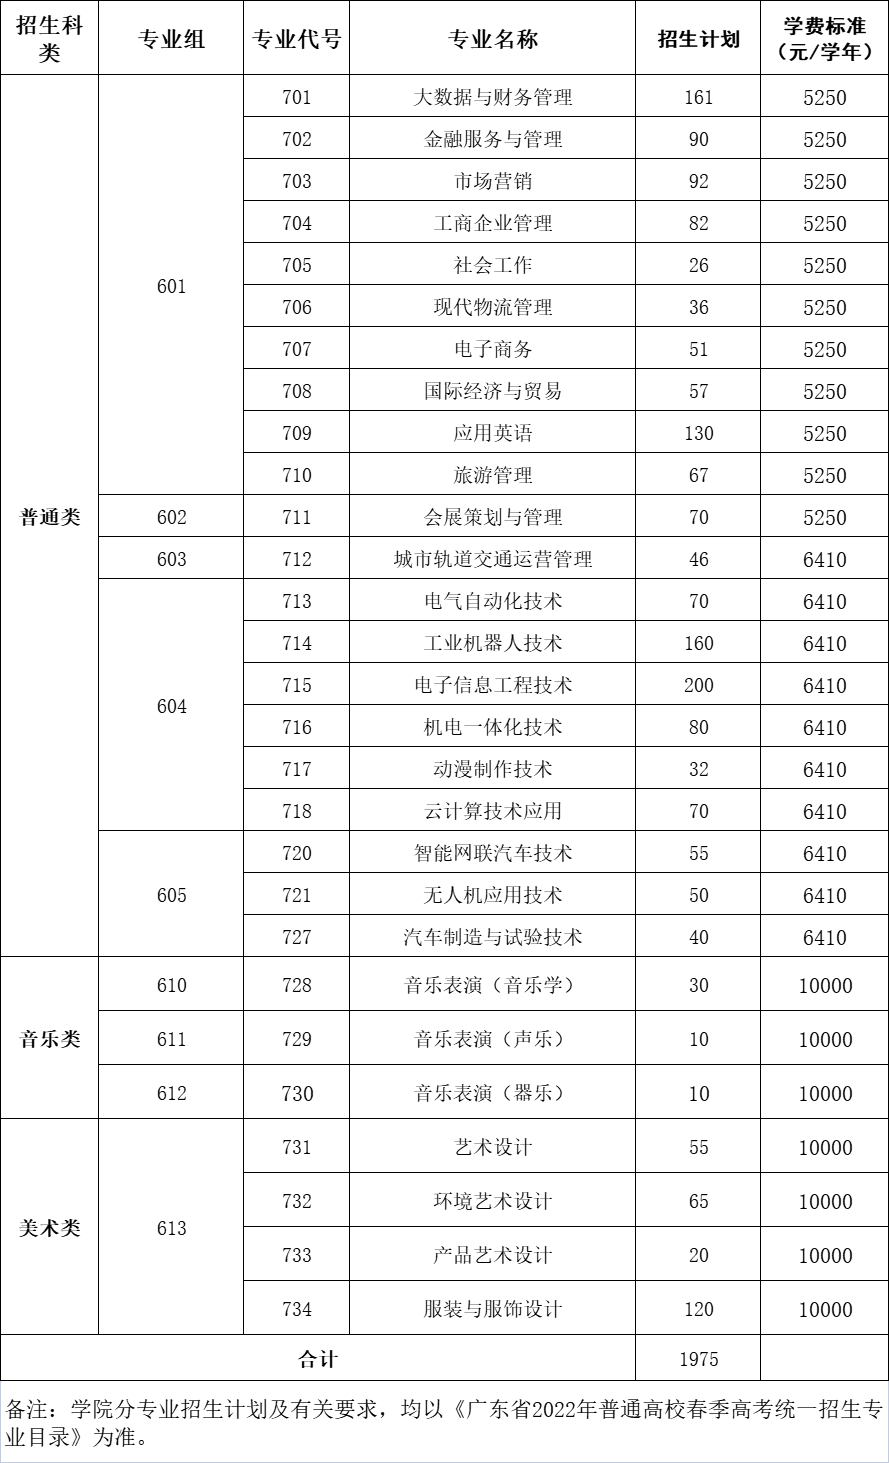 广州科技贸易职业学院2022年学考招生计划